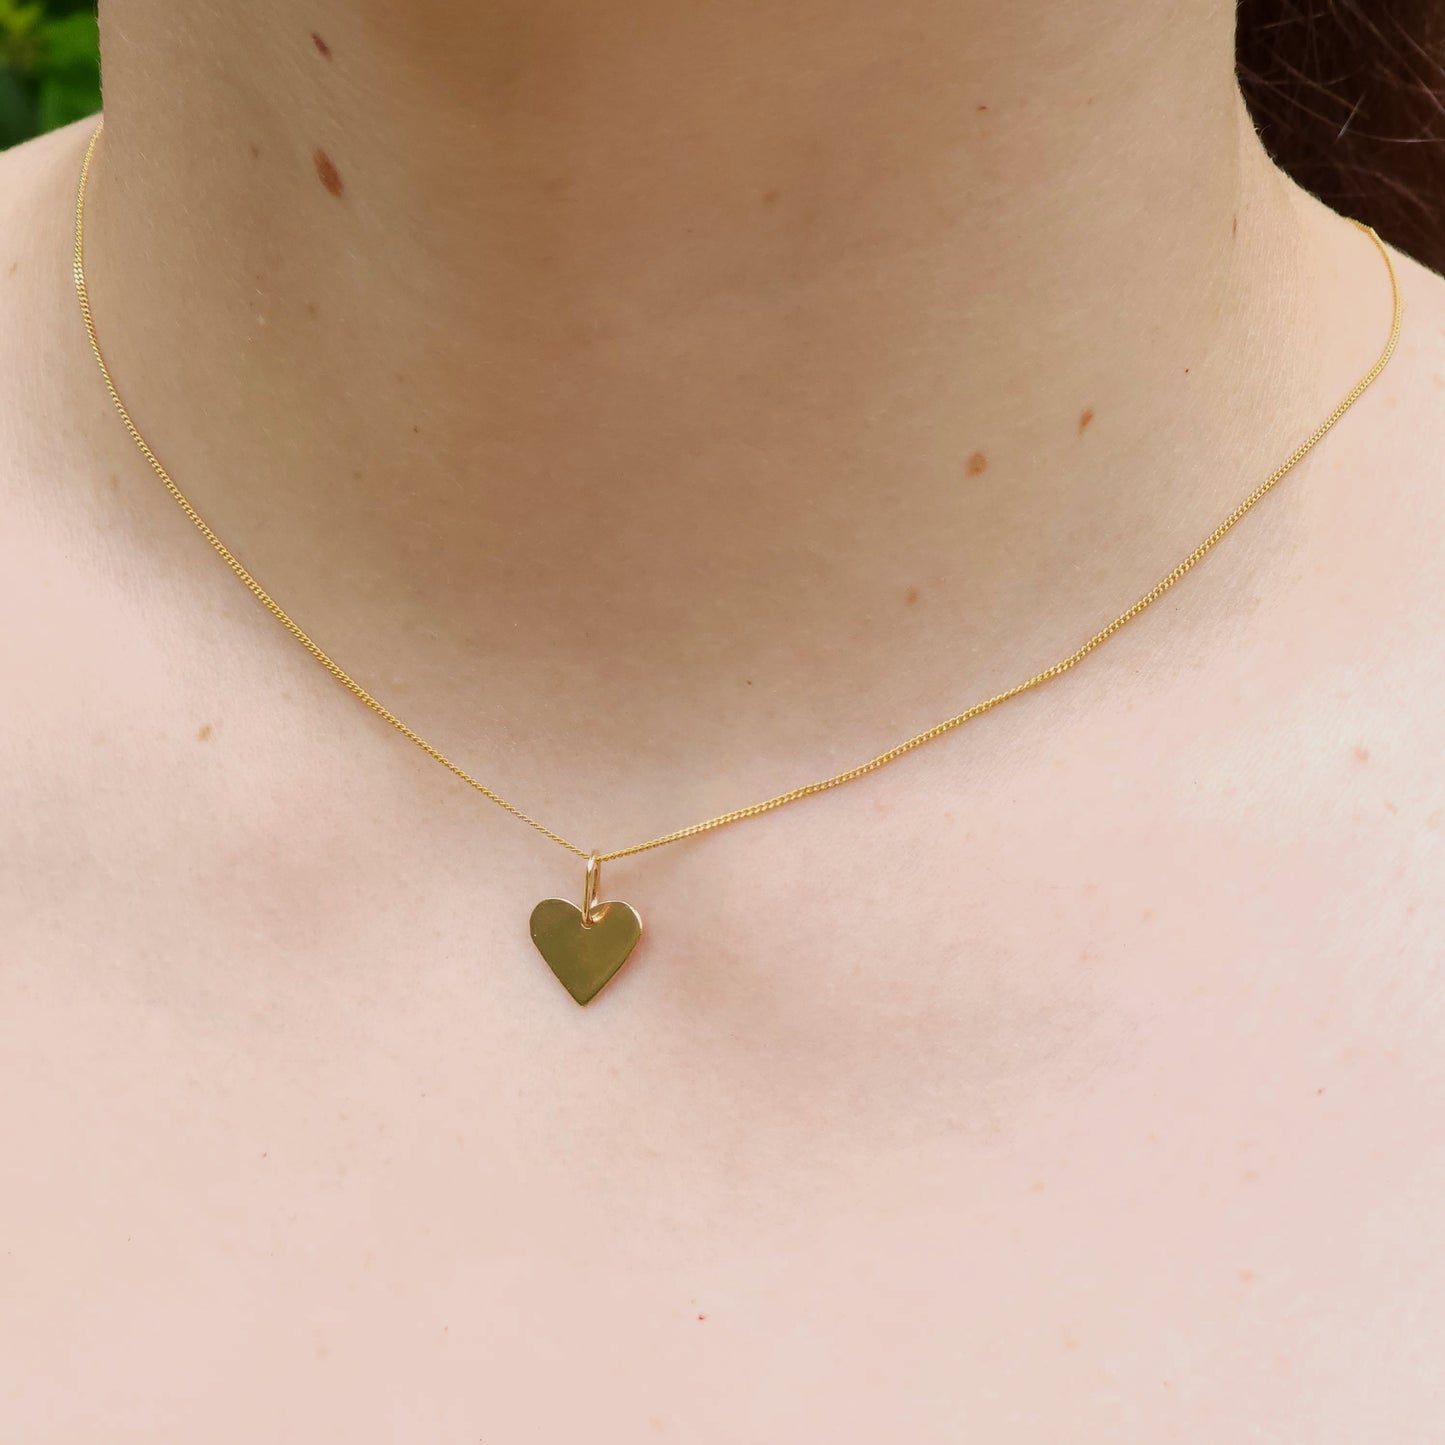 Gold Little Heart Pendant, 9 carat gold, Handmade in Australia